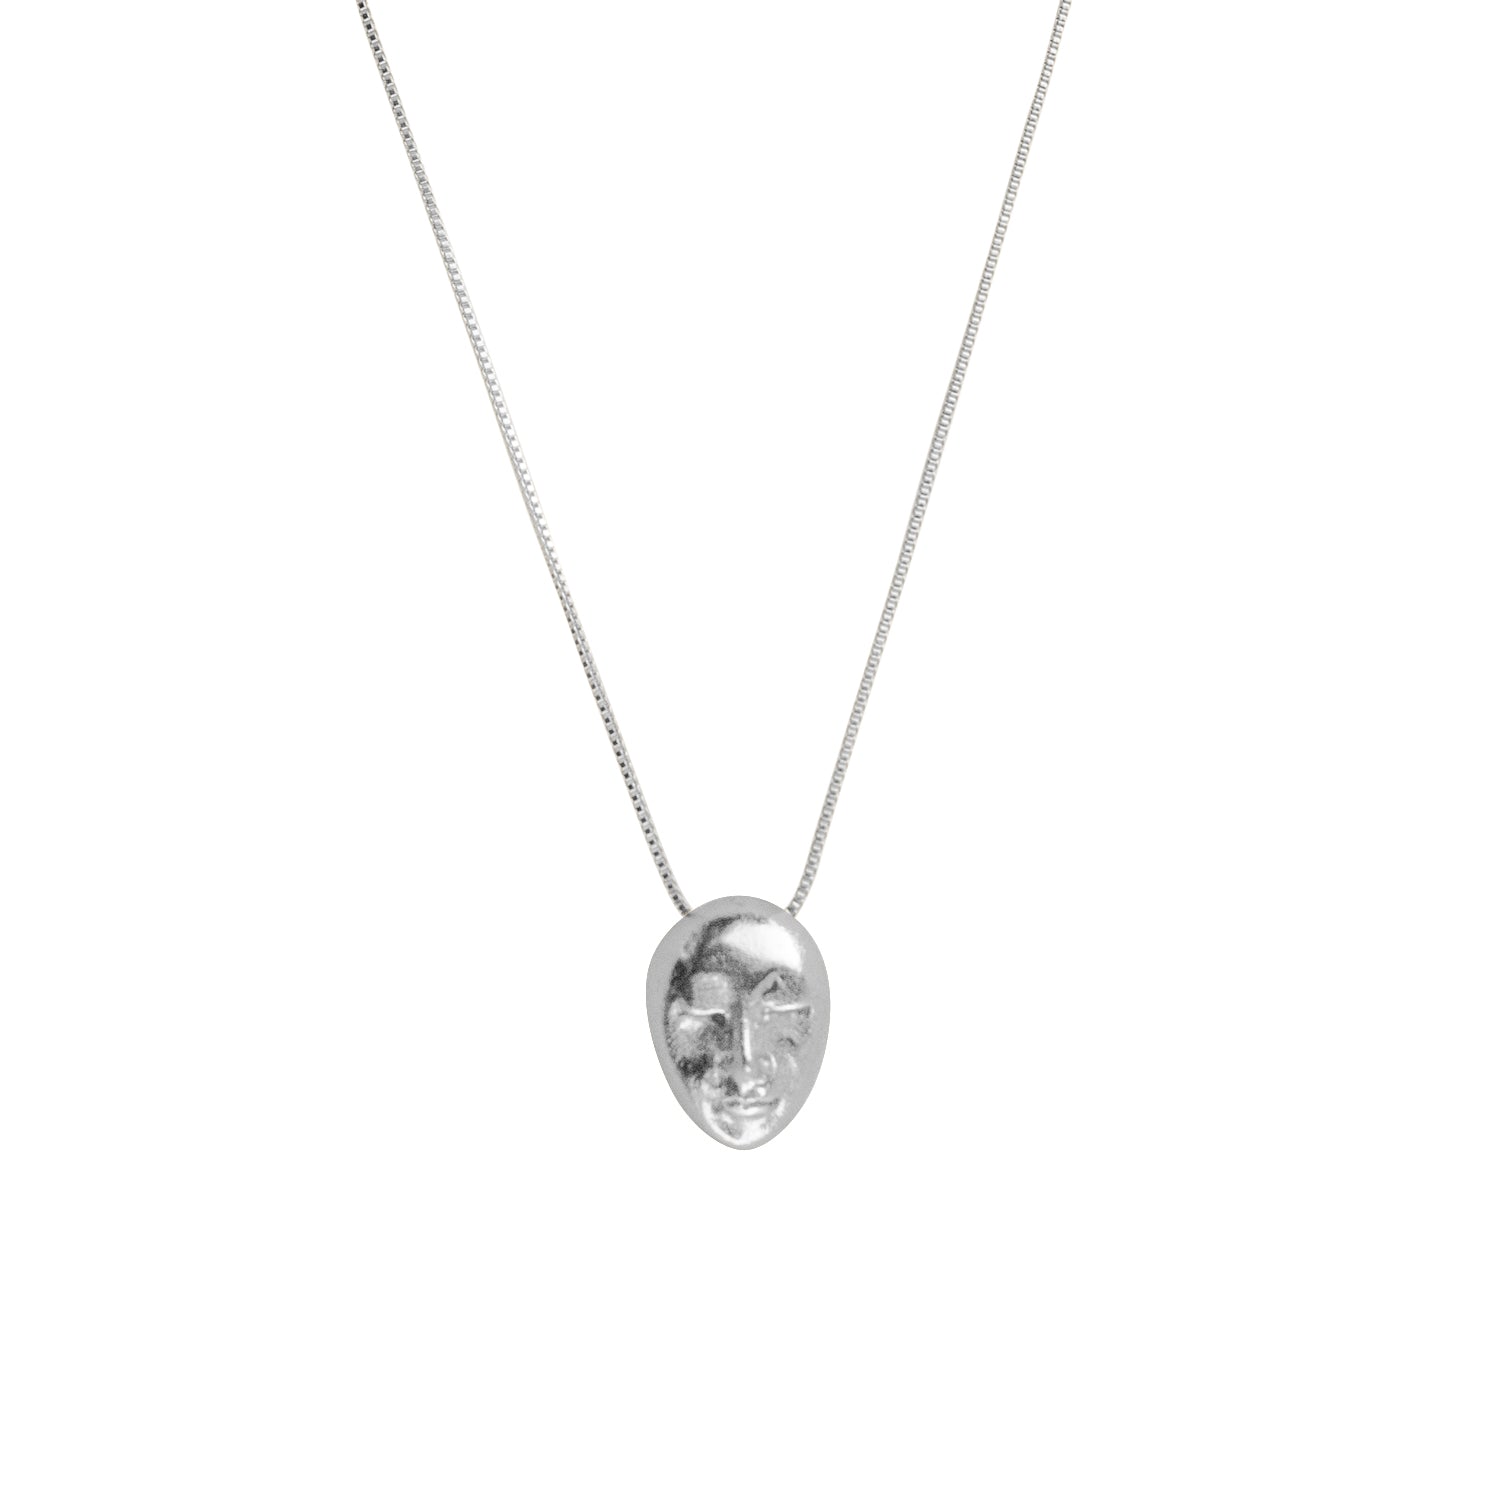 Lua Silver Necklace